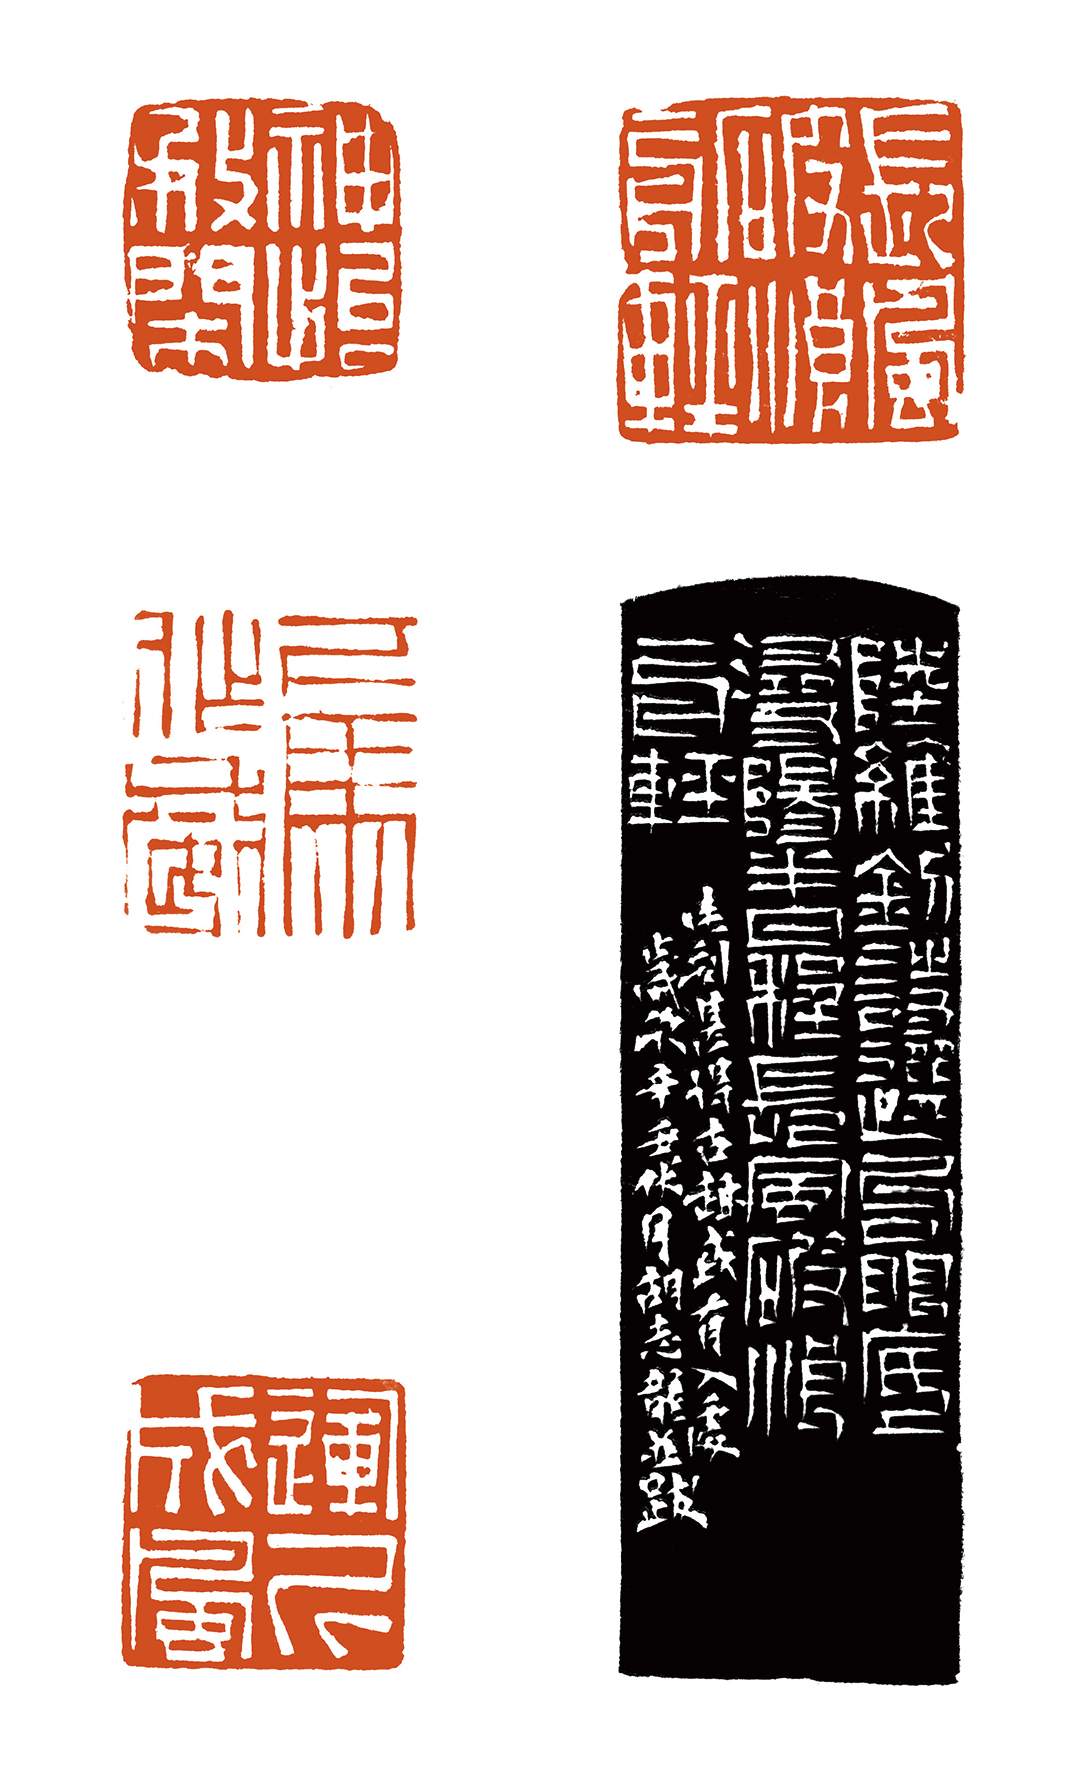  “書學之路——中國高等書法教育成果系列之篆刻專題展”胡志龍作品